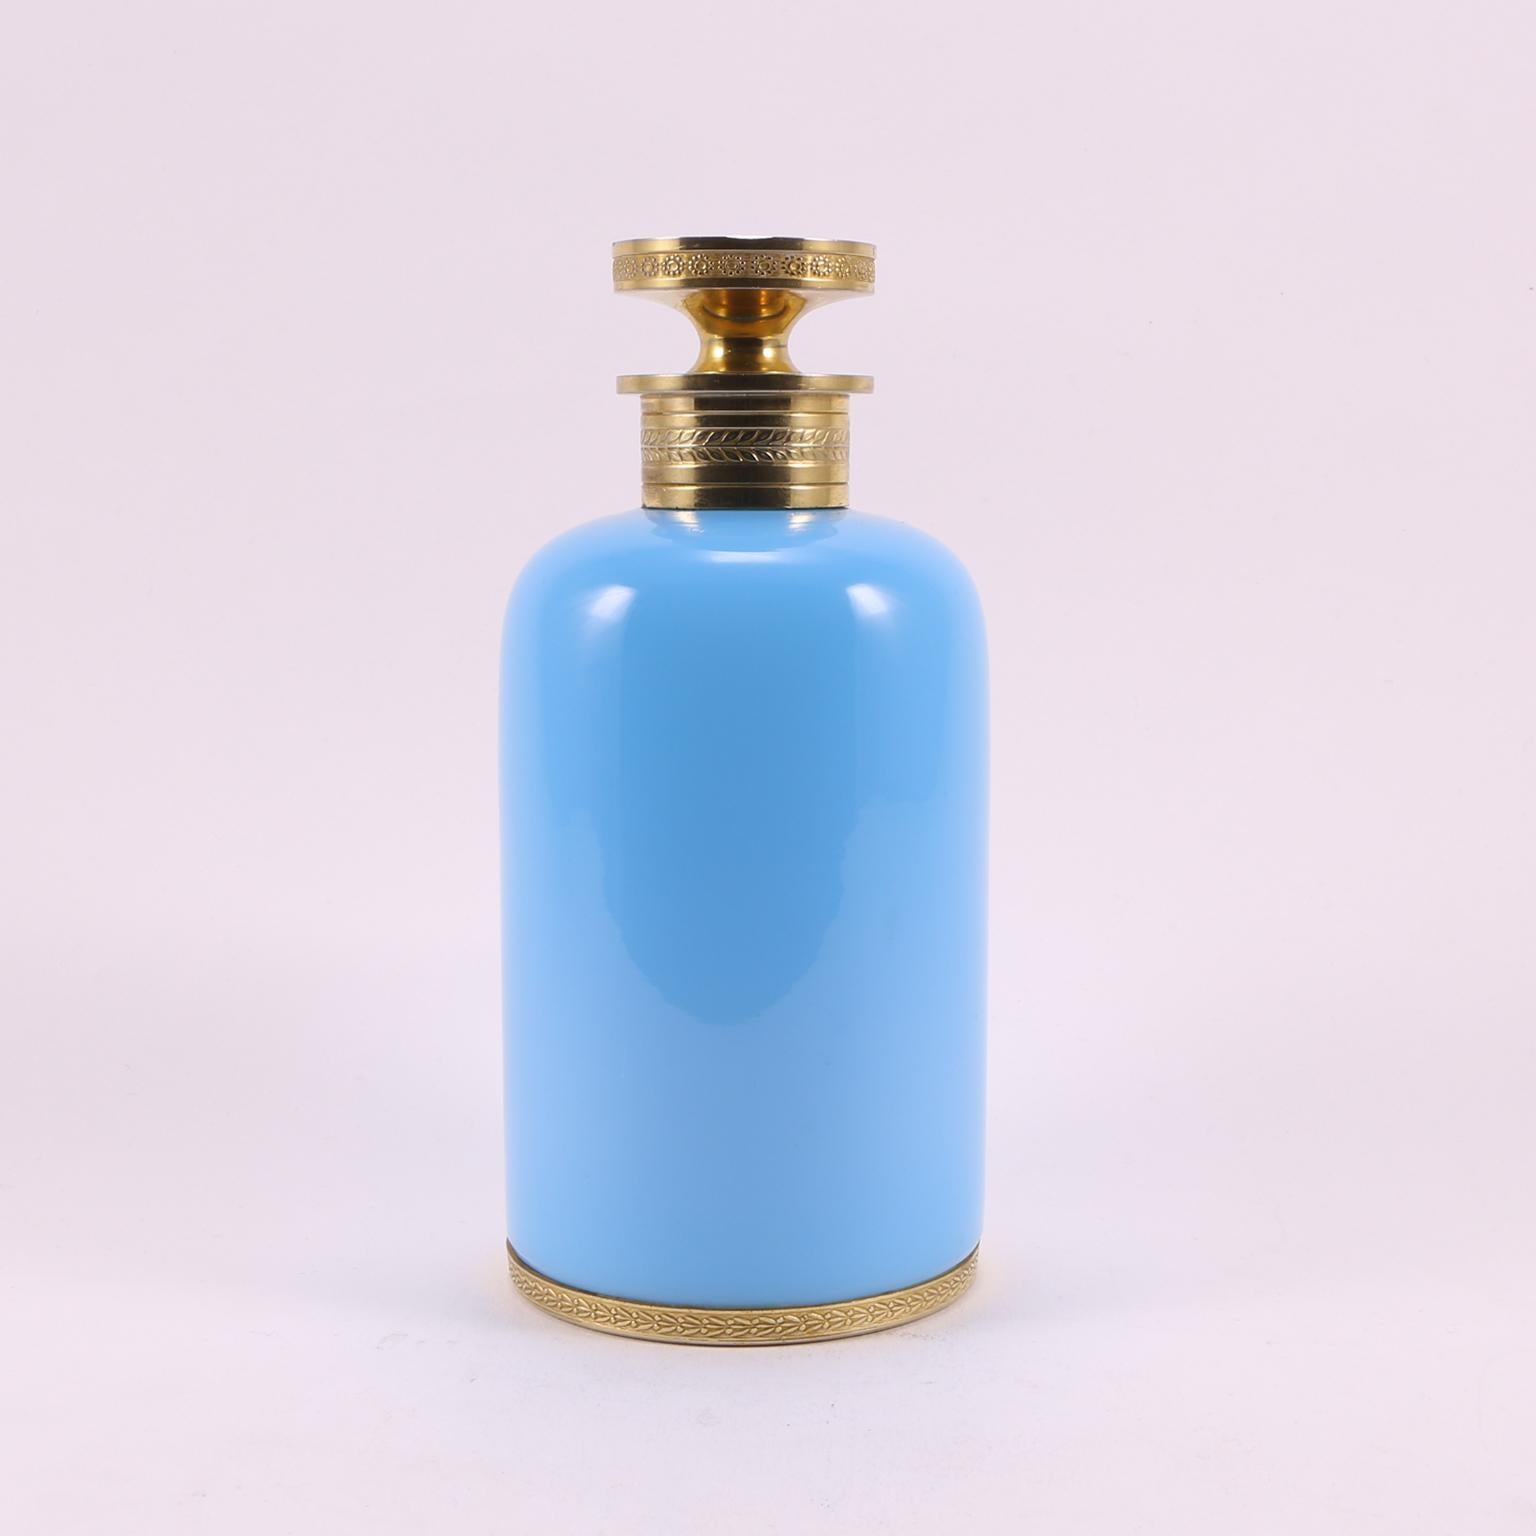 1920 perfume bottles